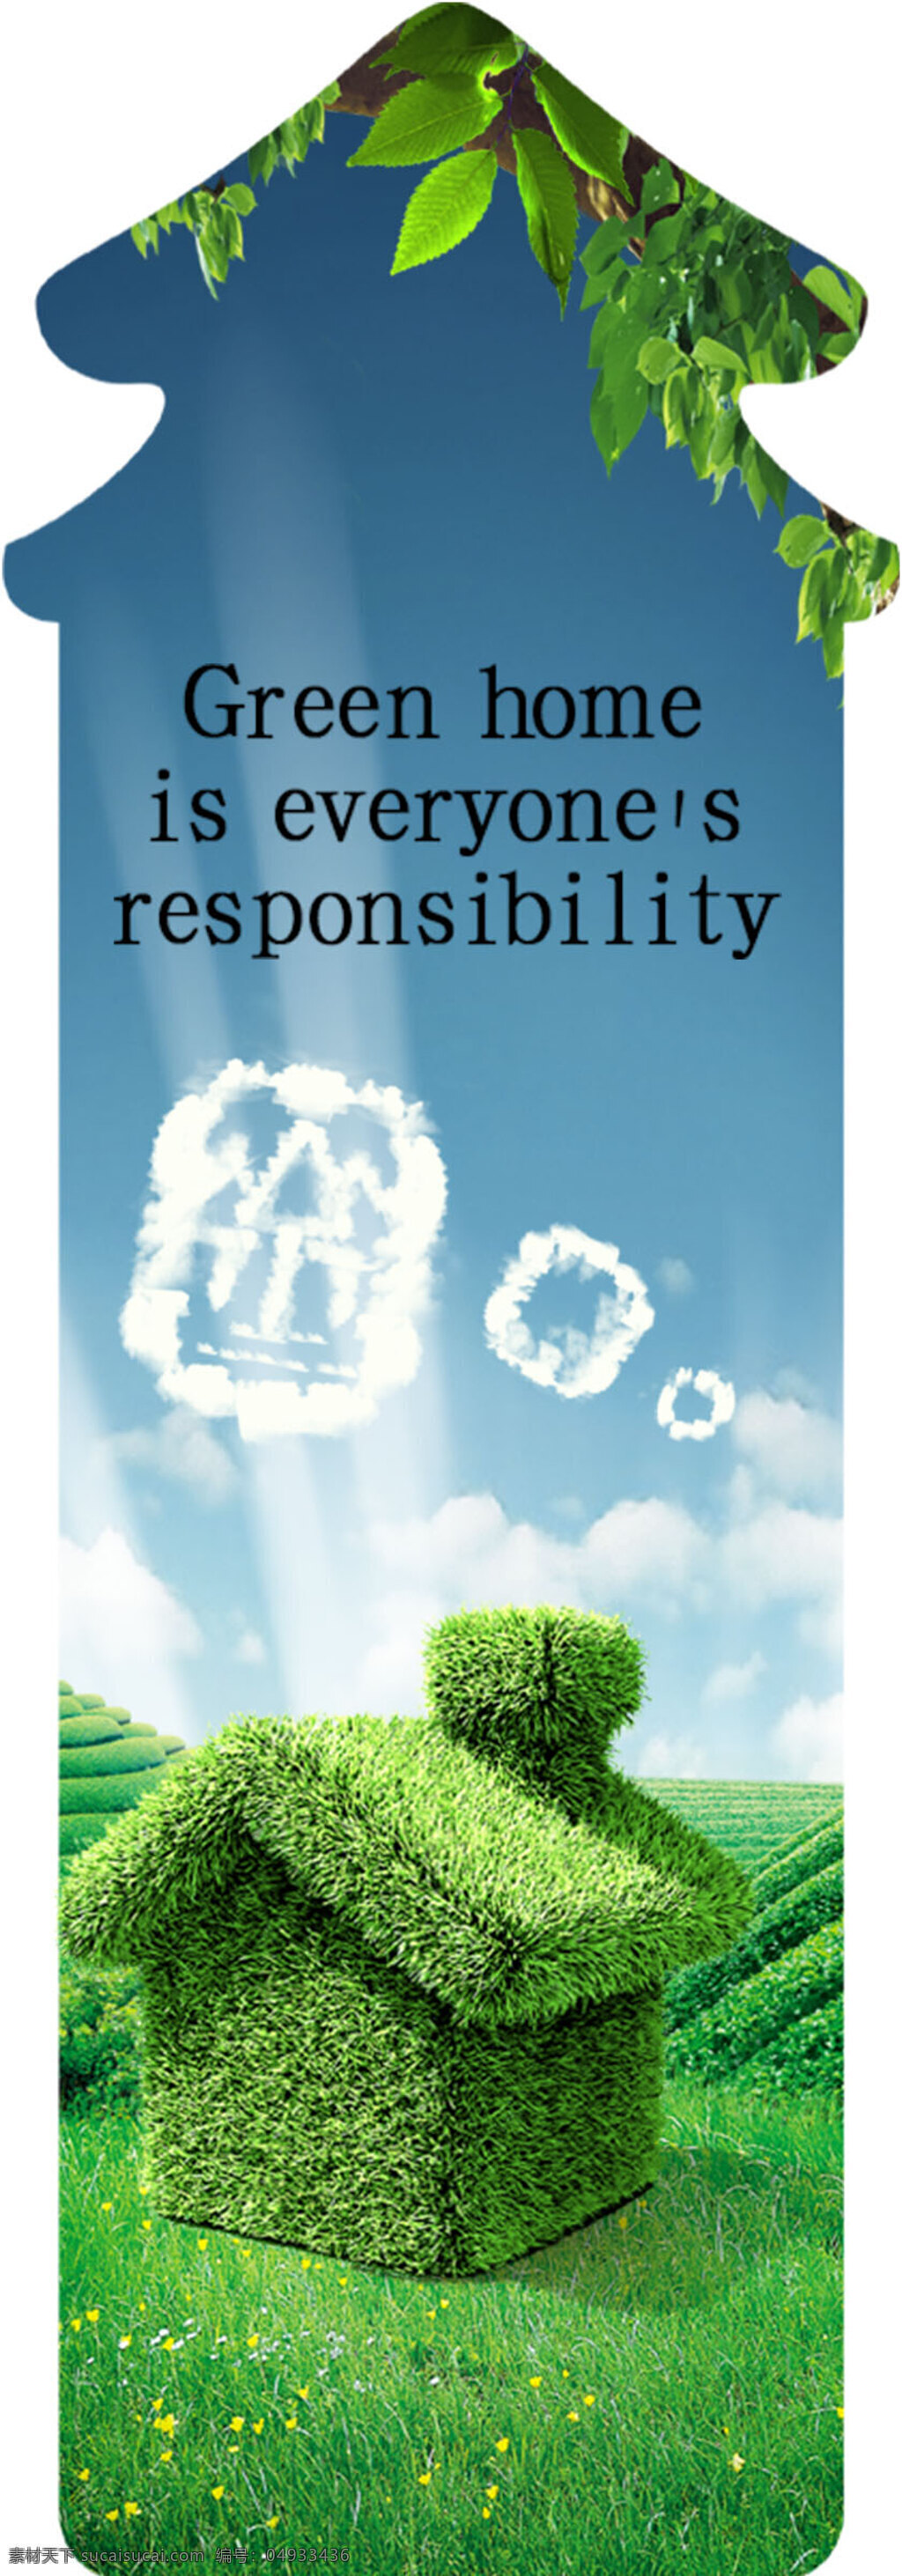 绿色环保 环境保护 绿色能源 生态保护 生态平衡 psd素材 宣传海报